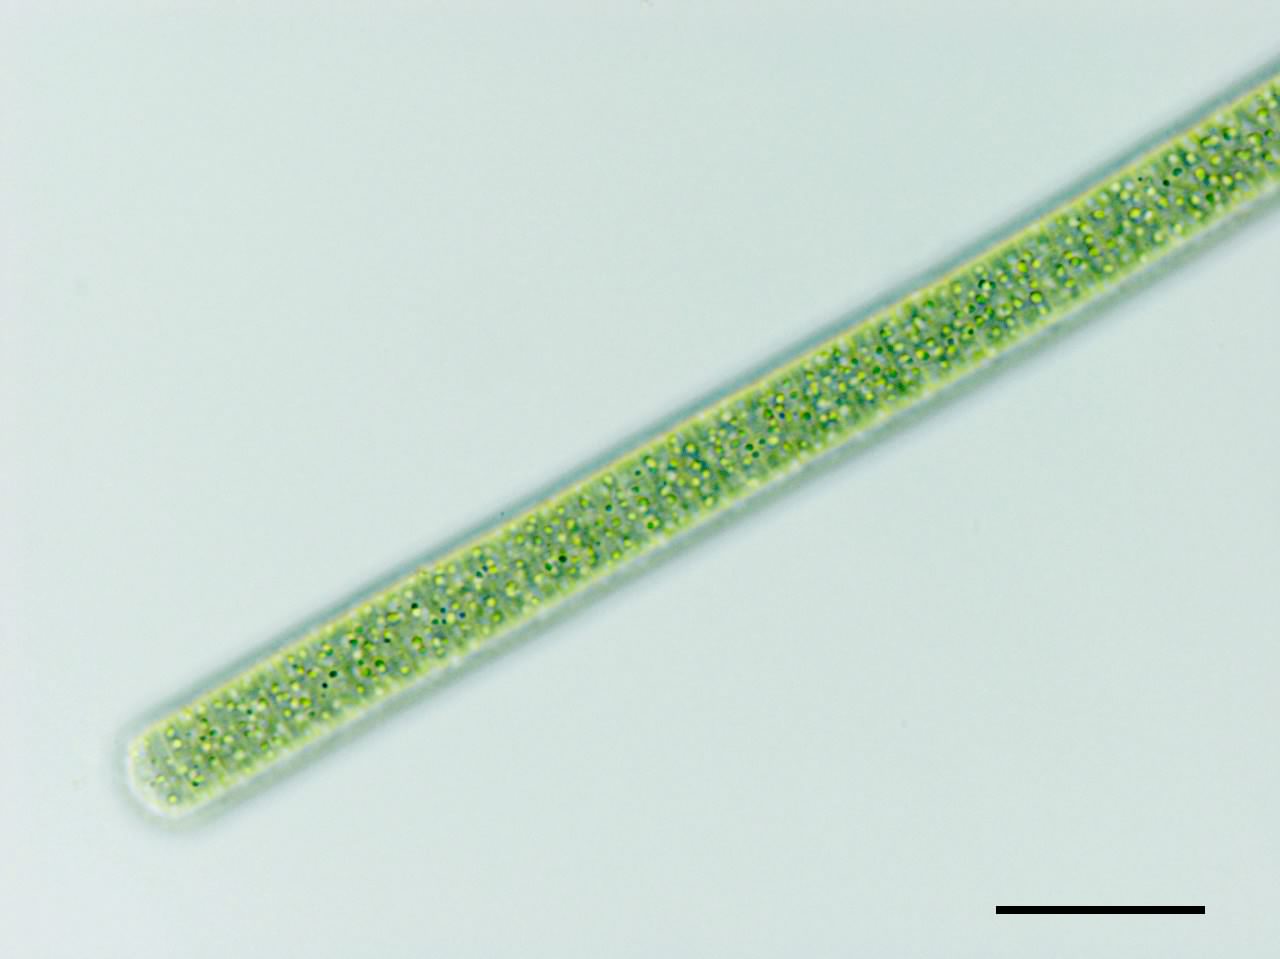 ユレモ（Oscillataria sp.） の画像